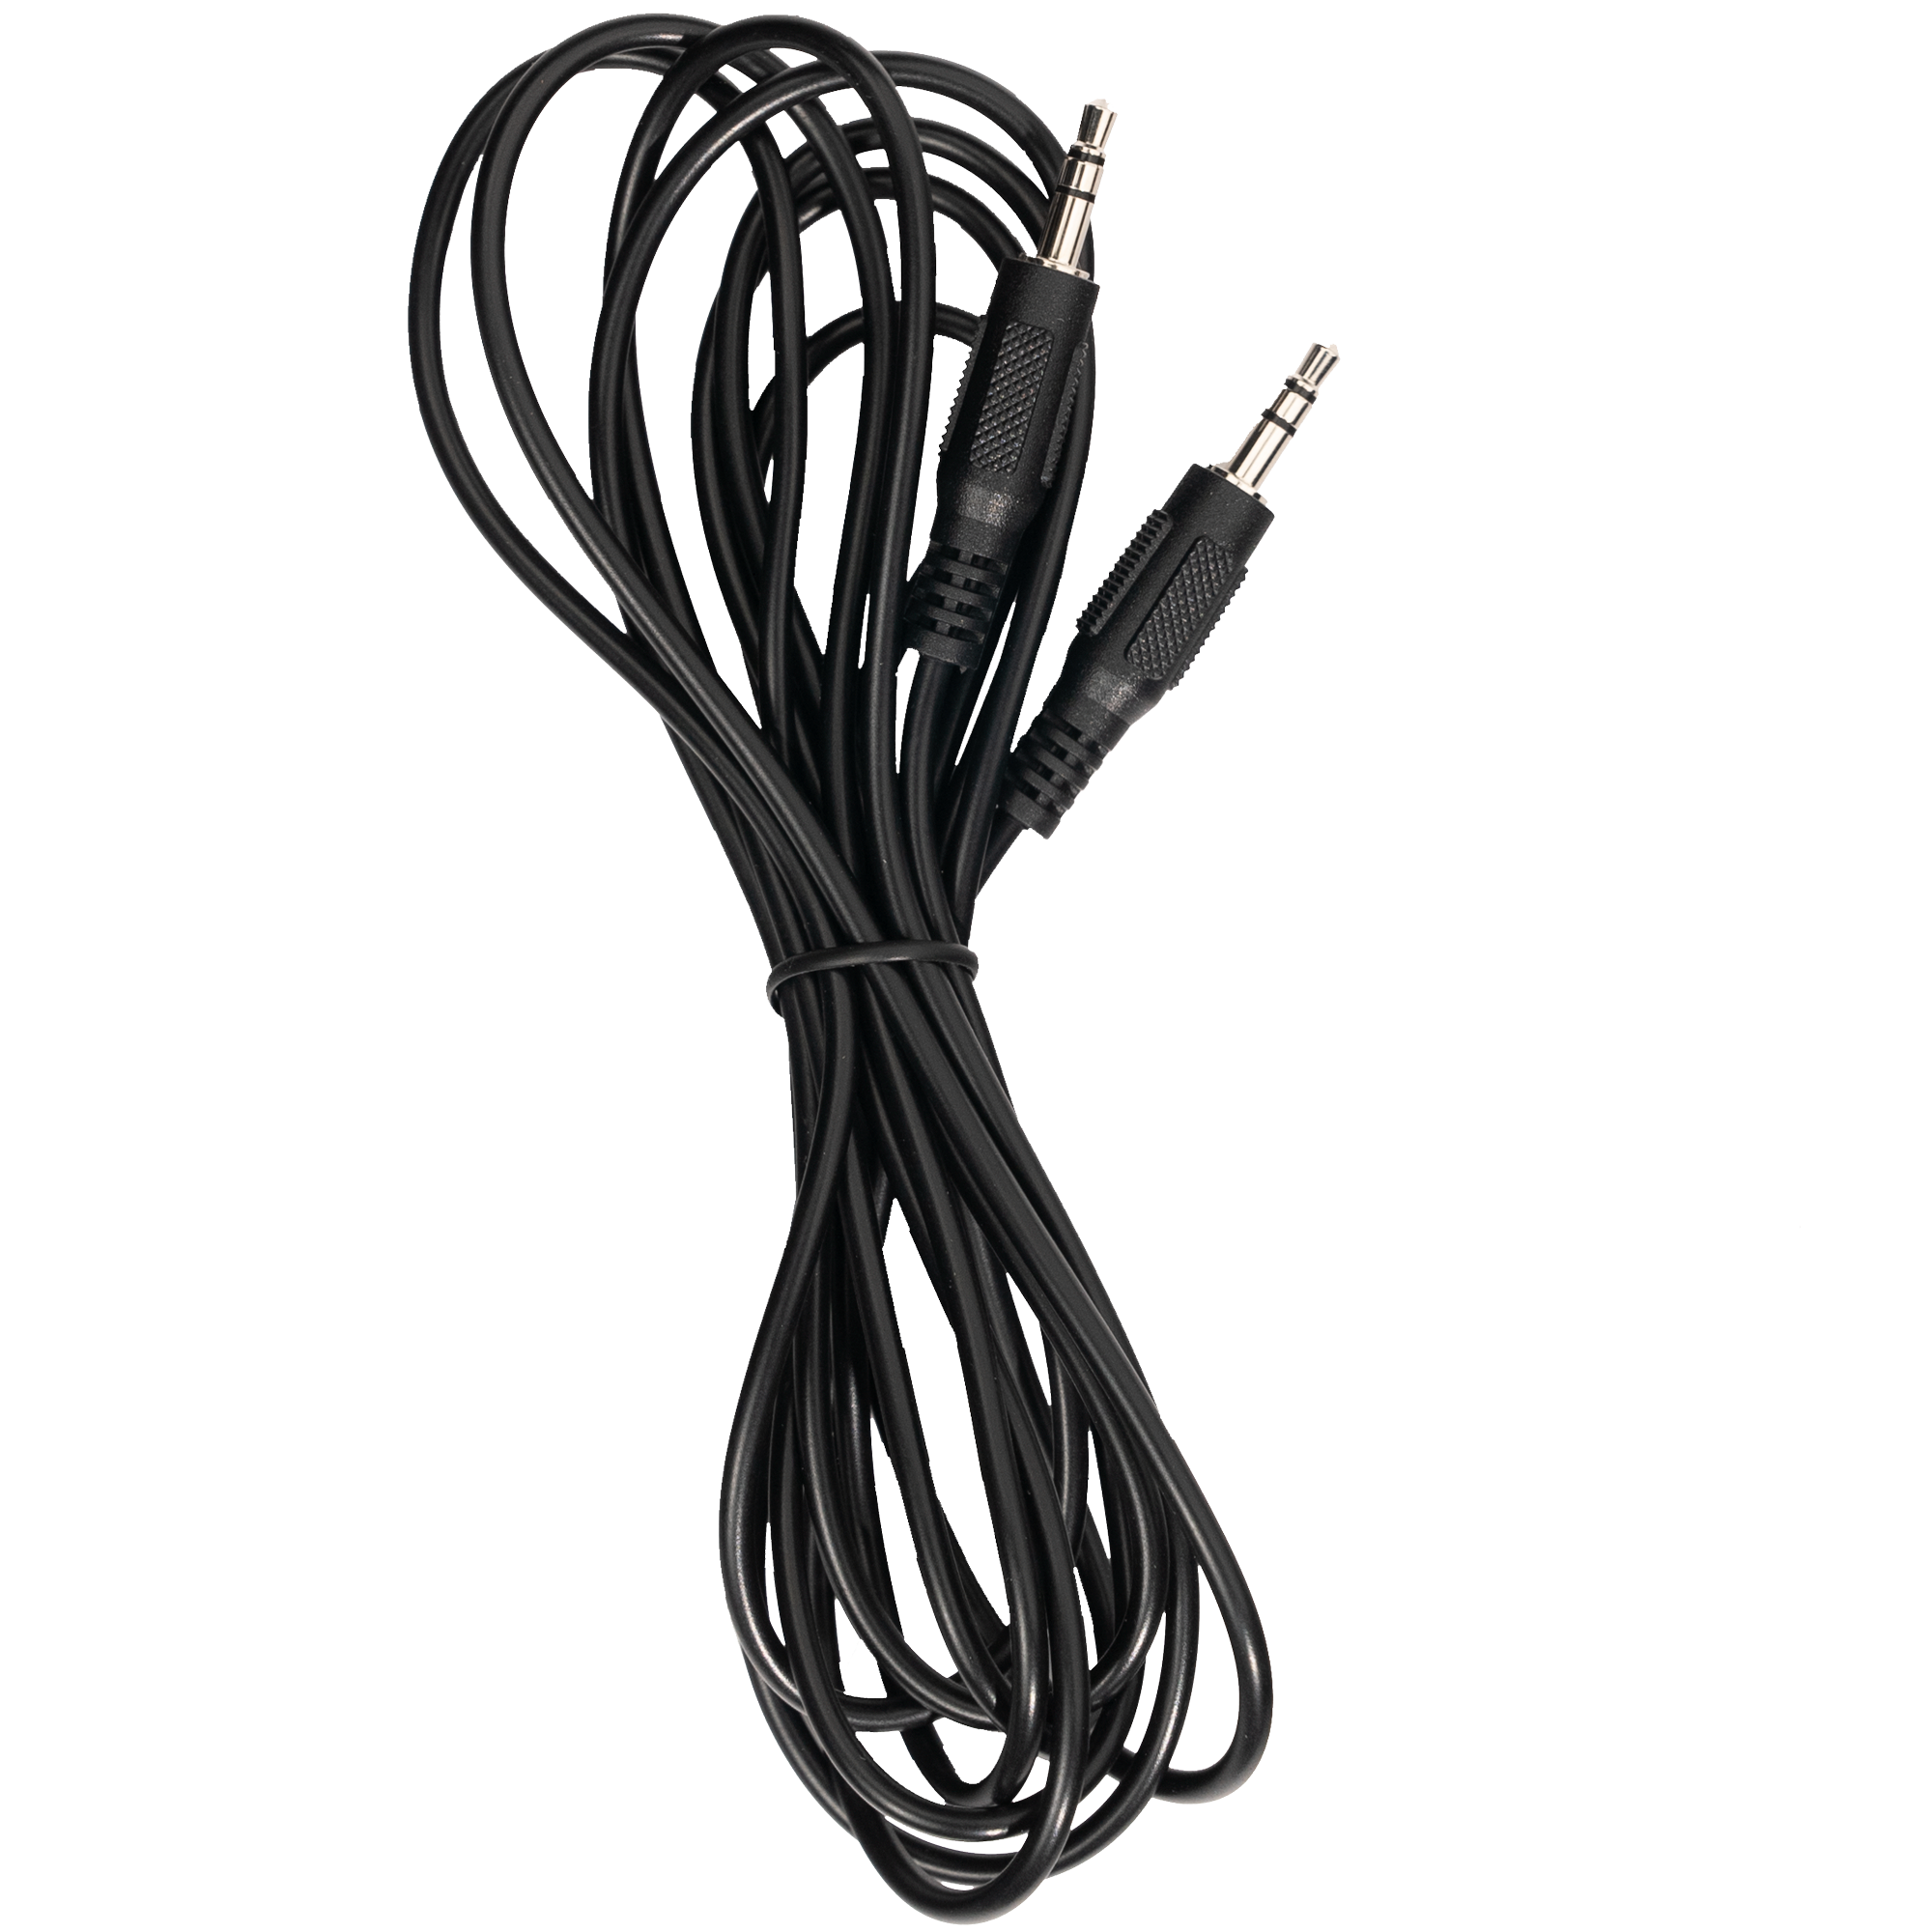 3.5mm 0-10v 介面電纜